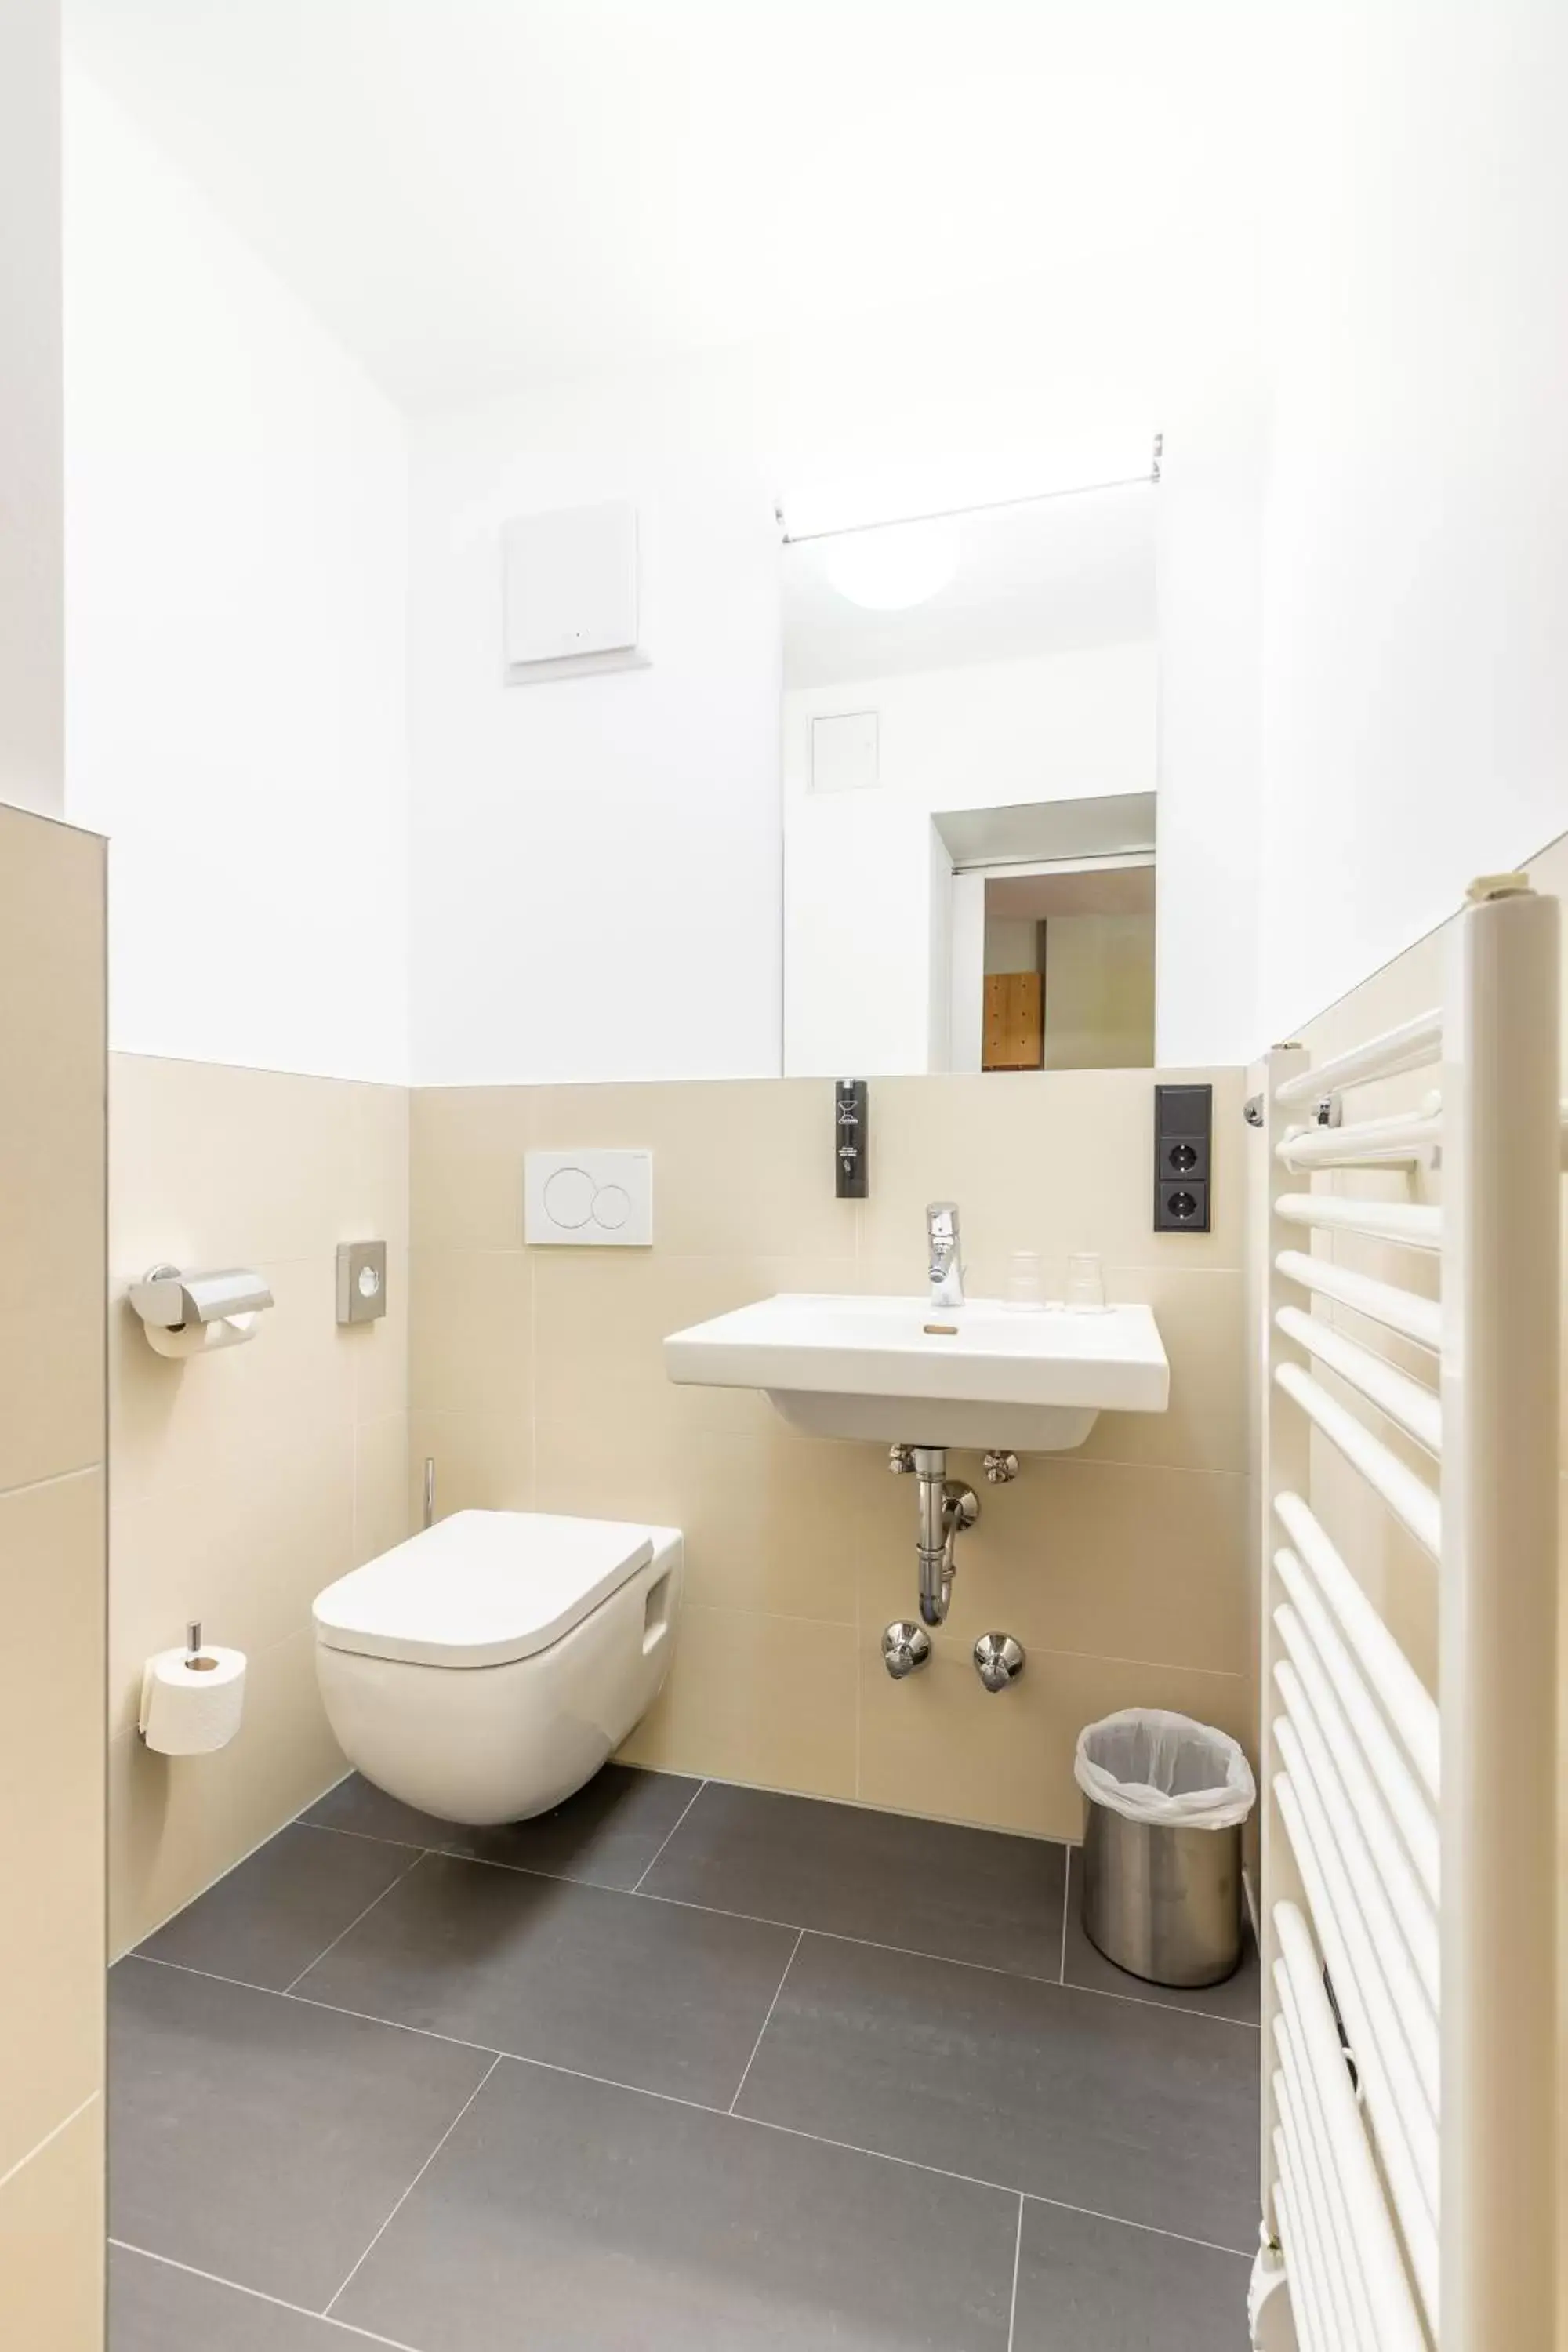 Toilet, Bathroom in mk hotel frankfurt